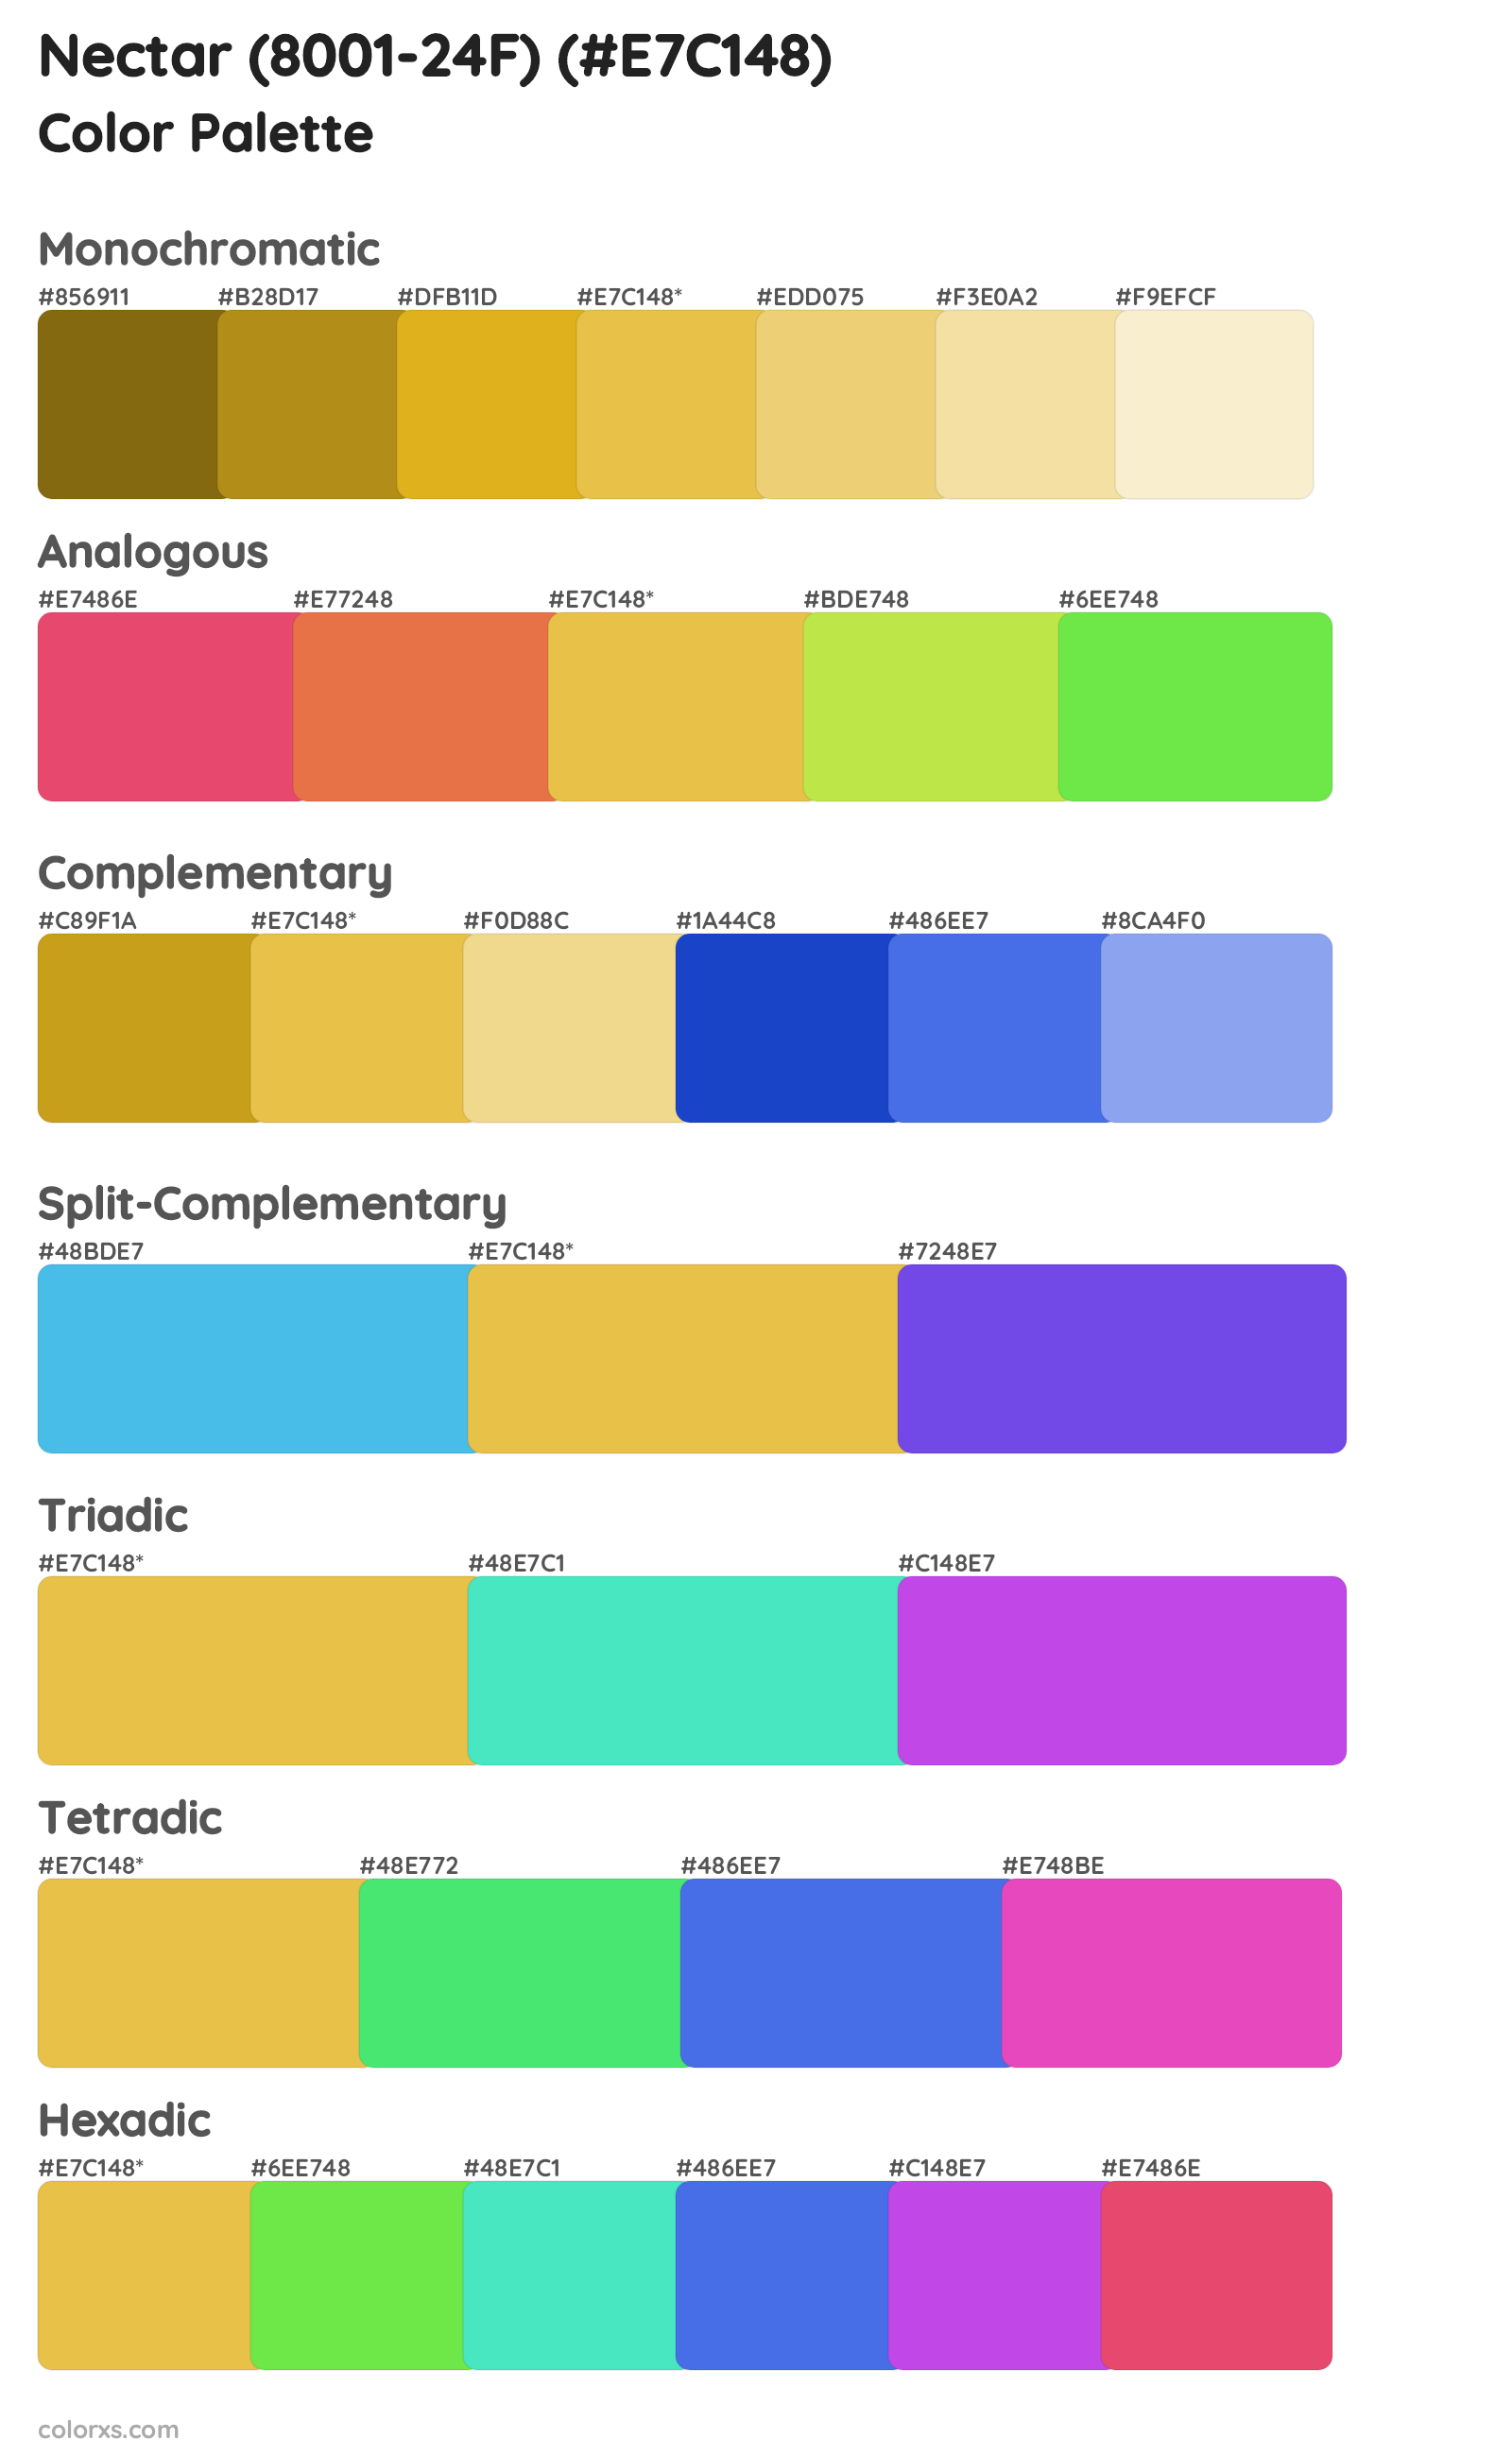 Nectar (8001-24F) Color Scheme Palettes